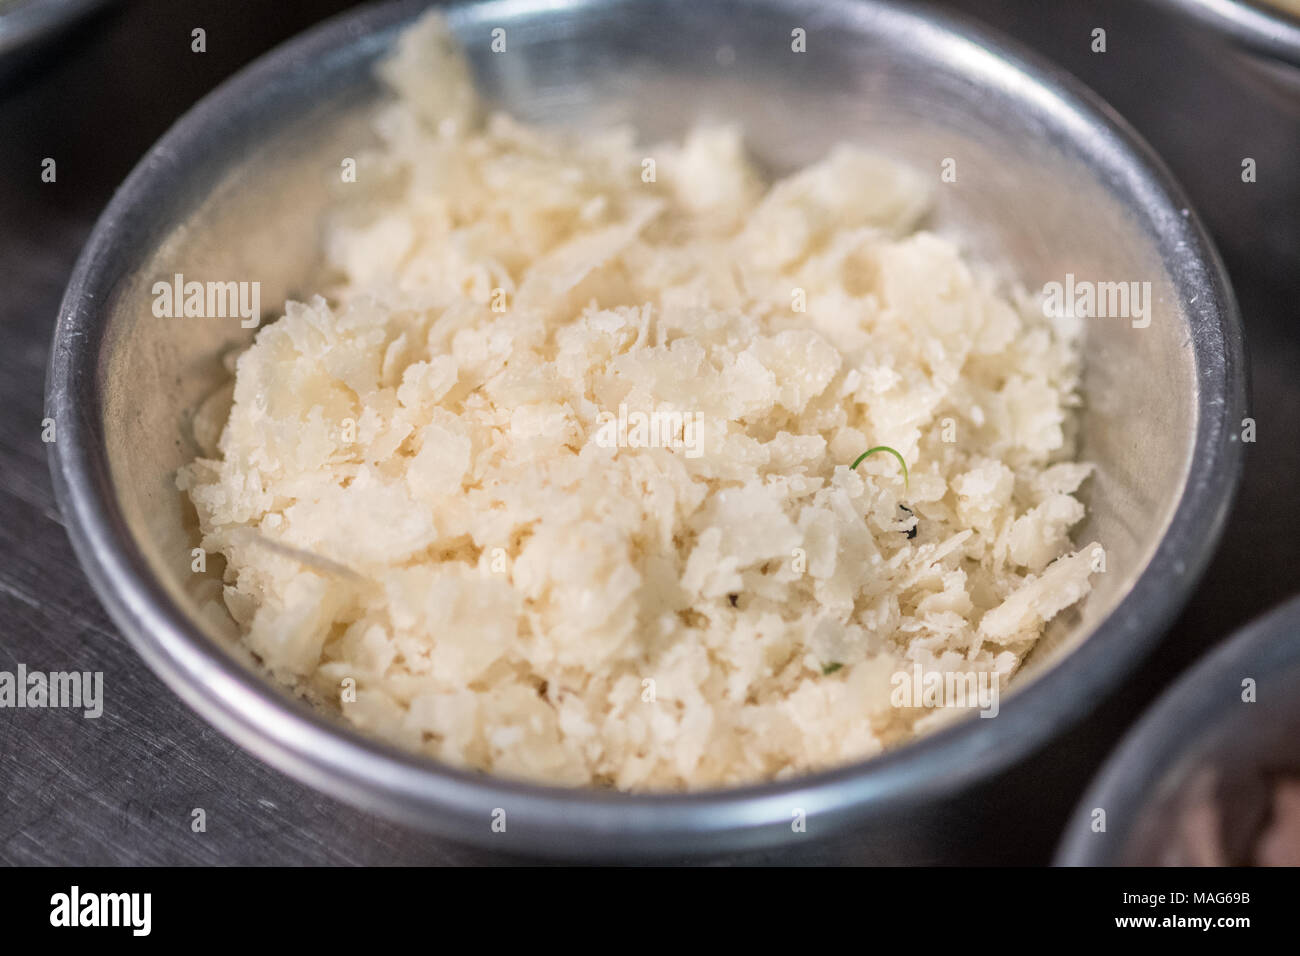 De parmesan fraîchement râpé prêt dans un bol pour la préparation des repas Banque D'Images